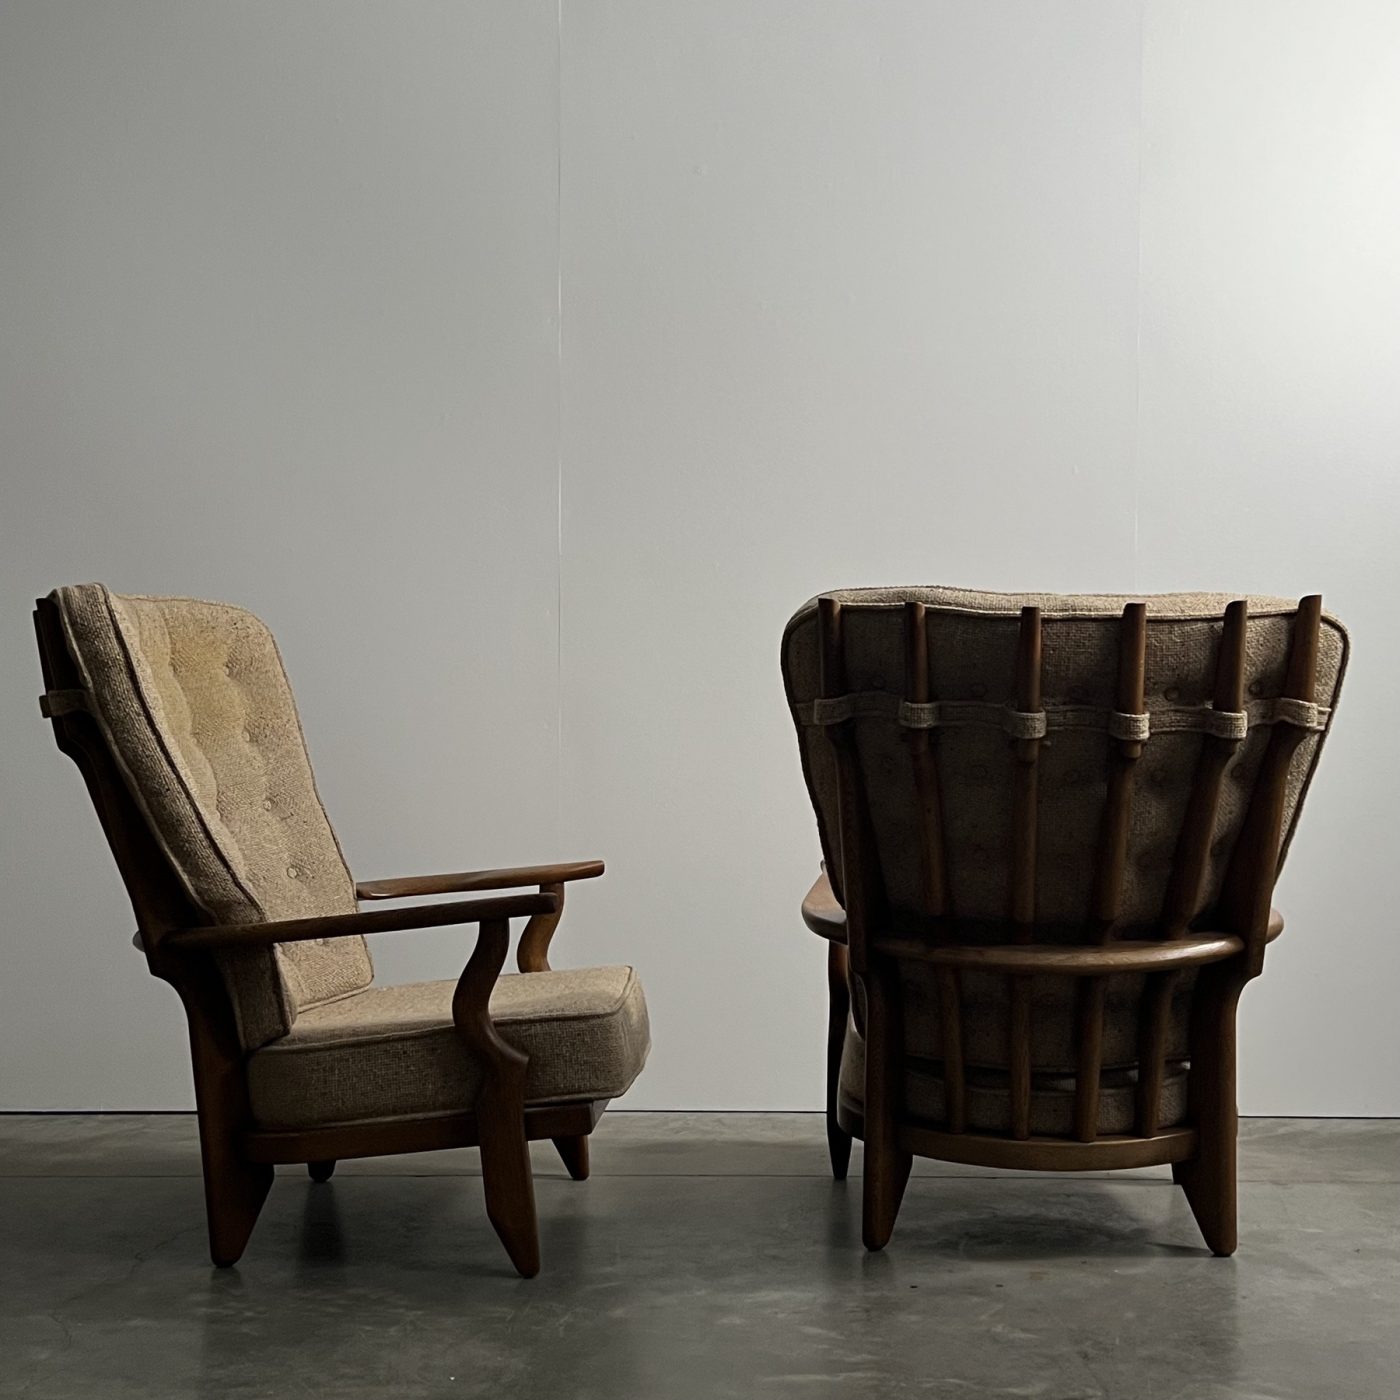 objet-vagabond-guillerme-armchairs0000